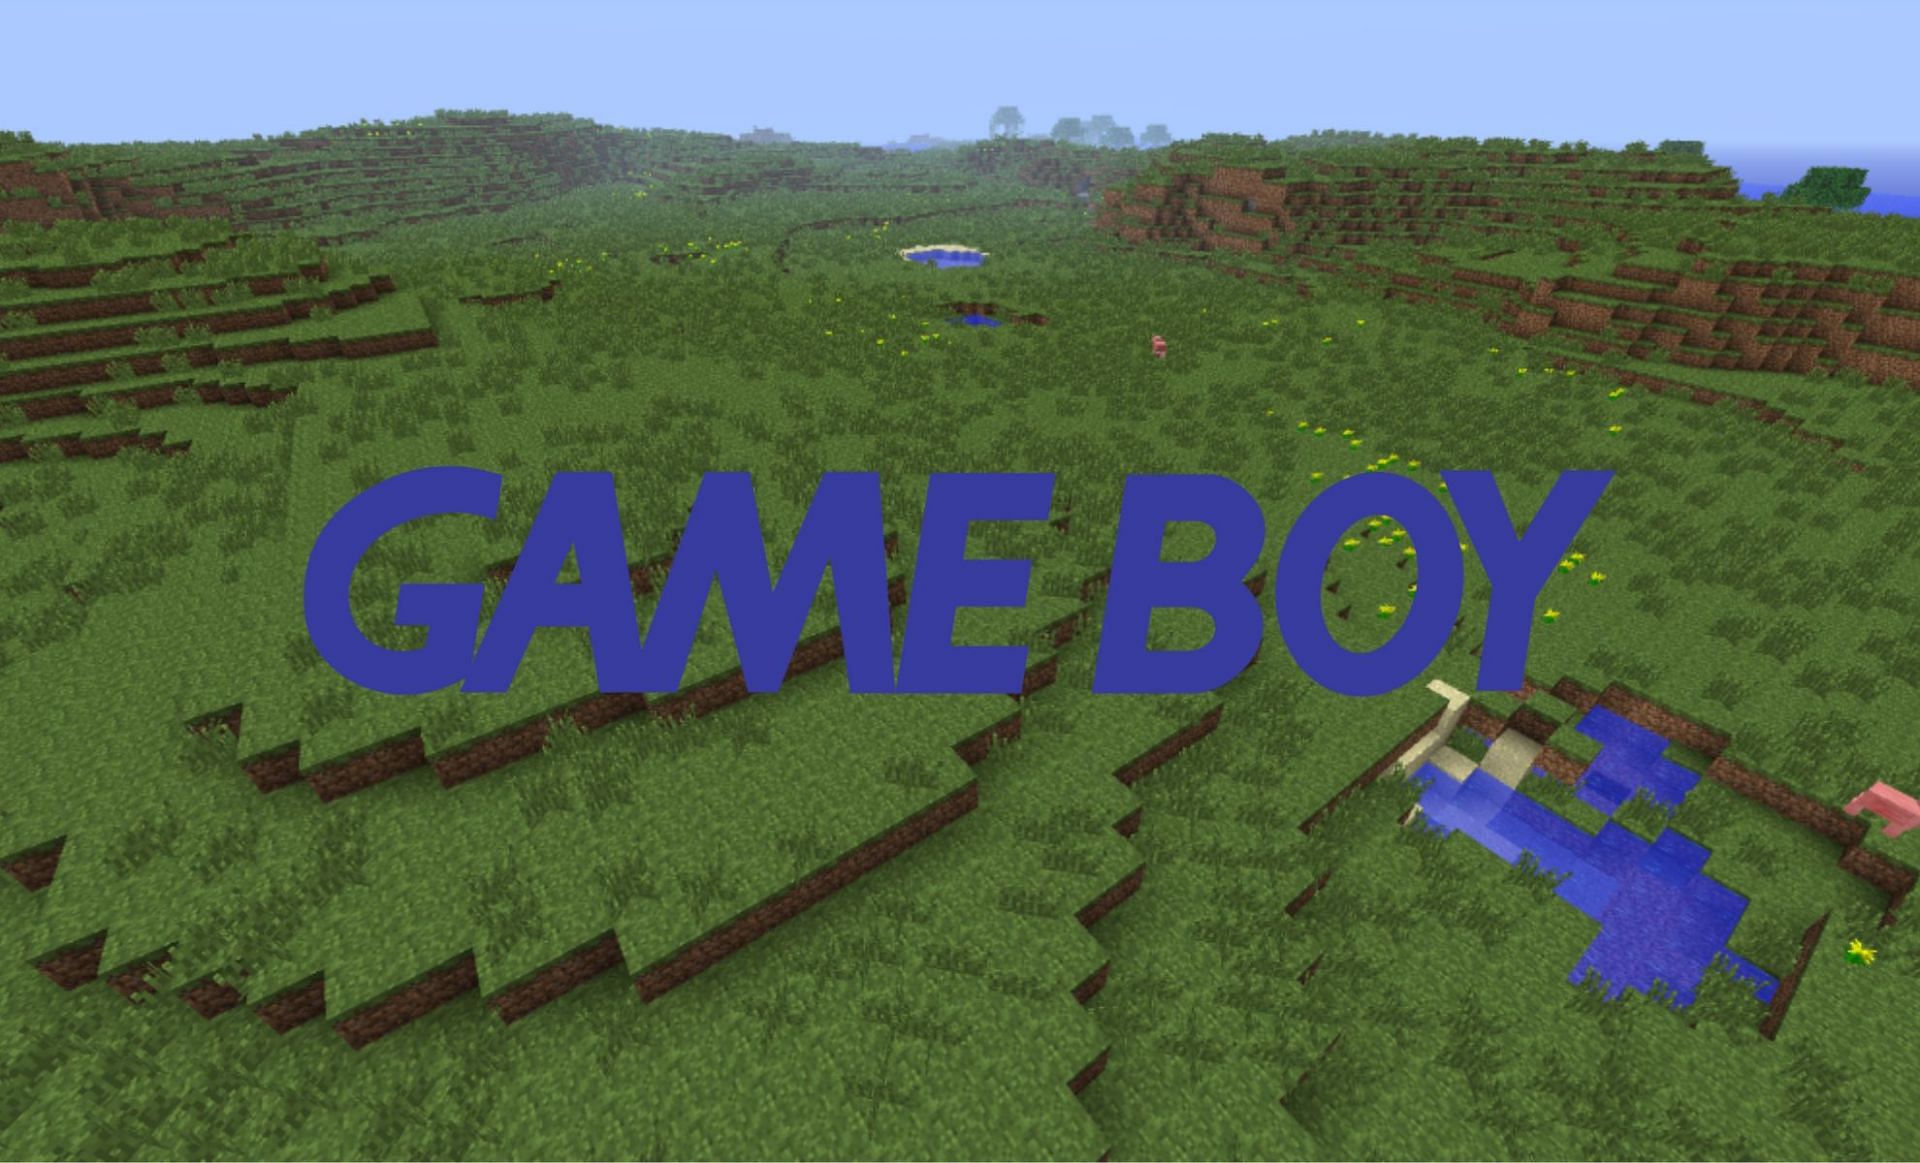 Gameboy emulator in-game (Image via Minecraft Wiki)